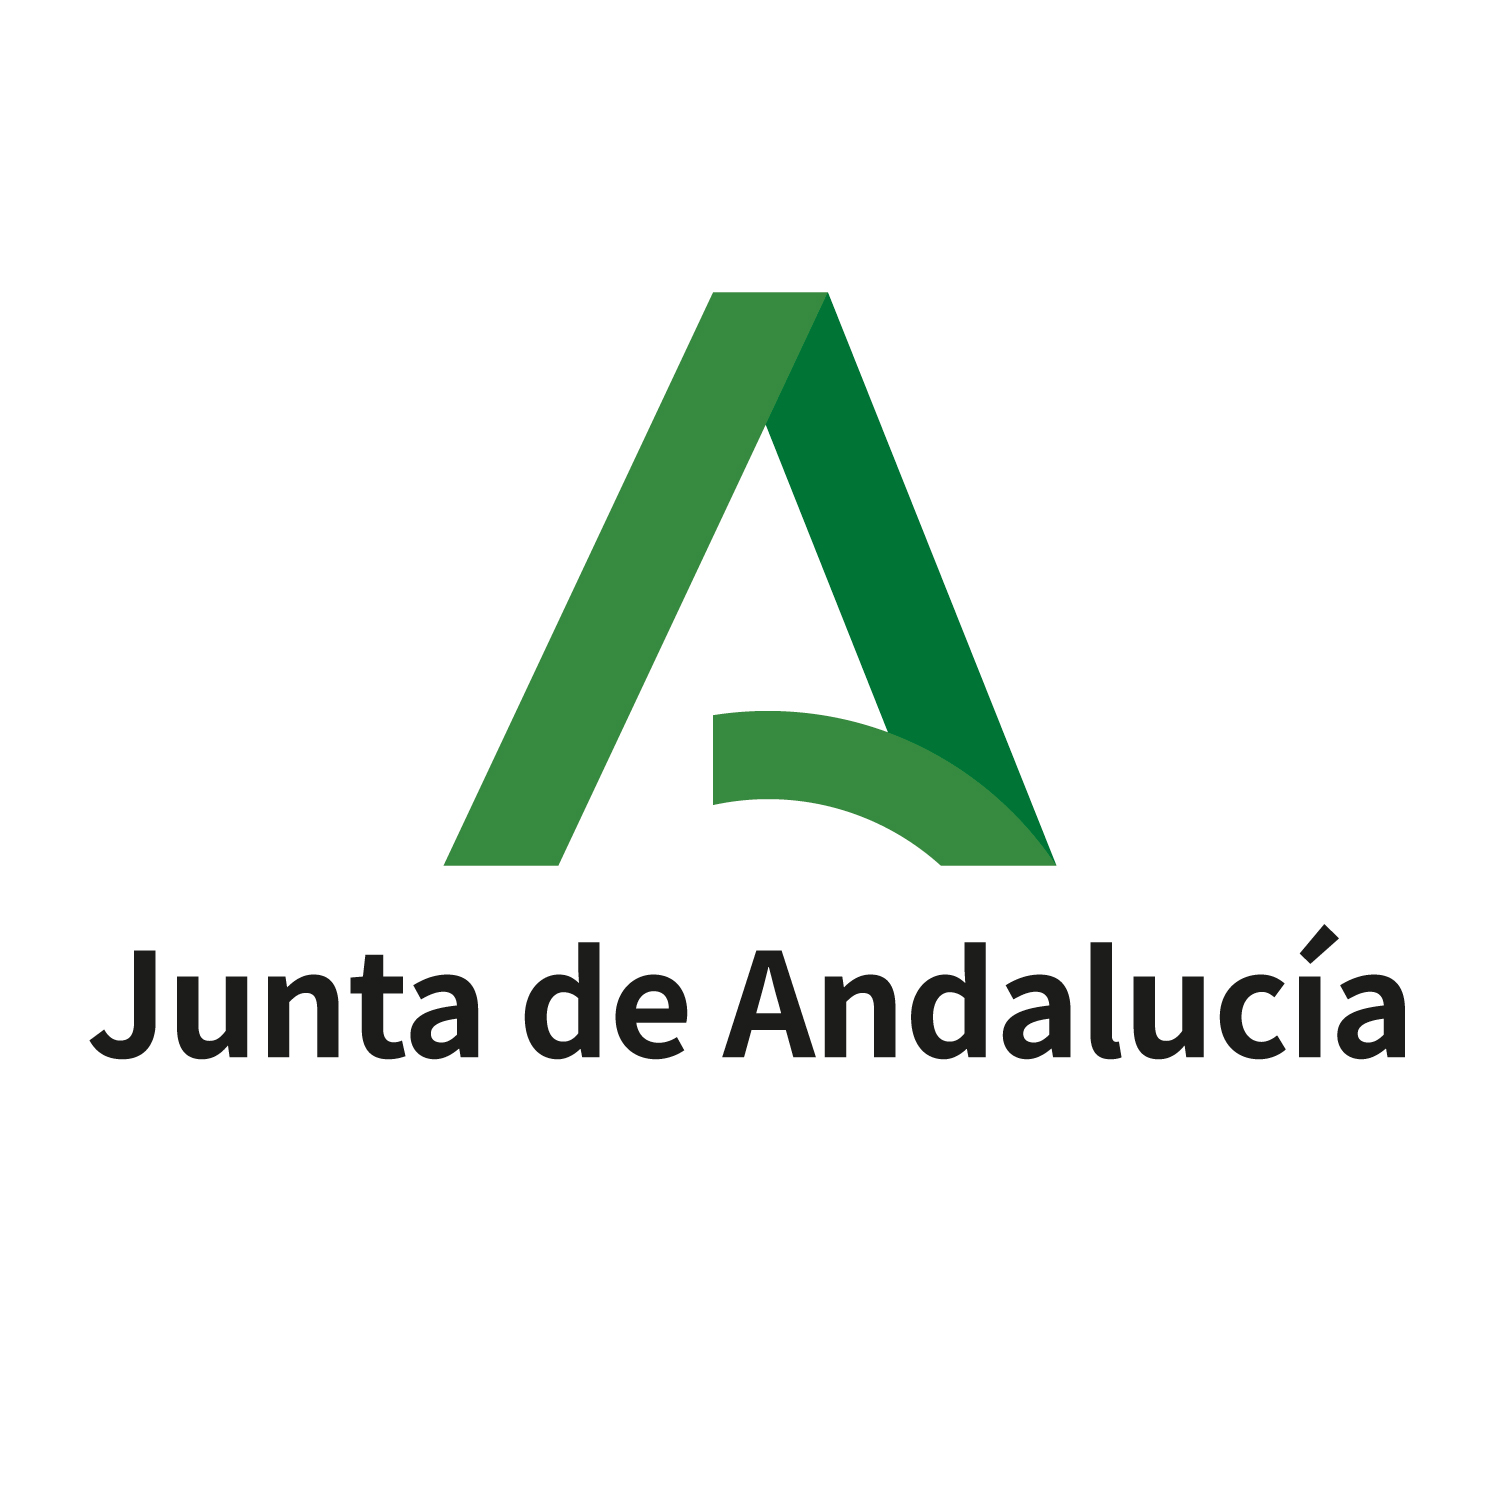 Junta de la Andalucia